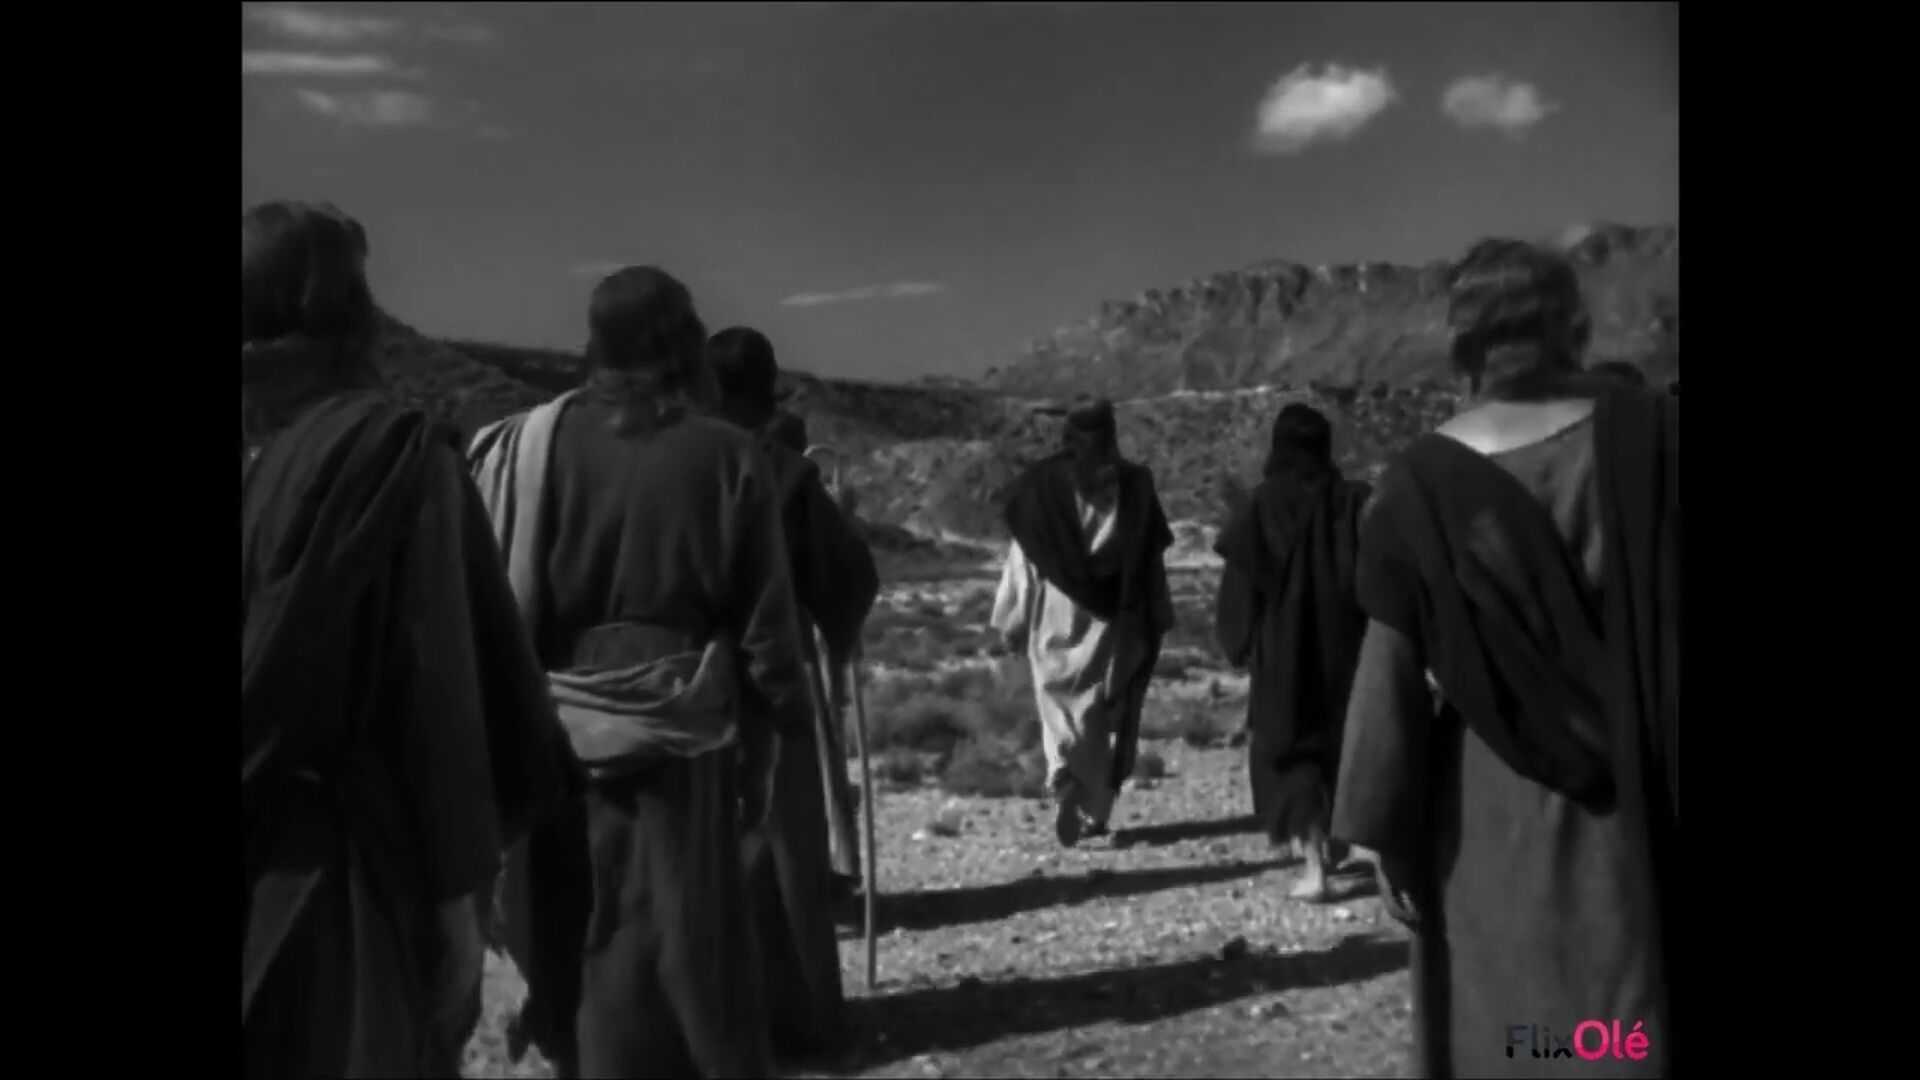 El beso de Judas (1954)